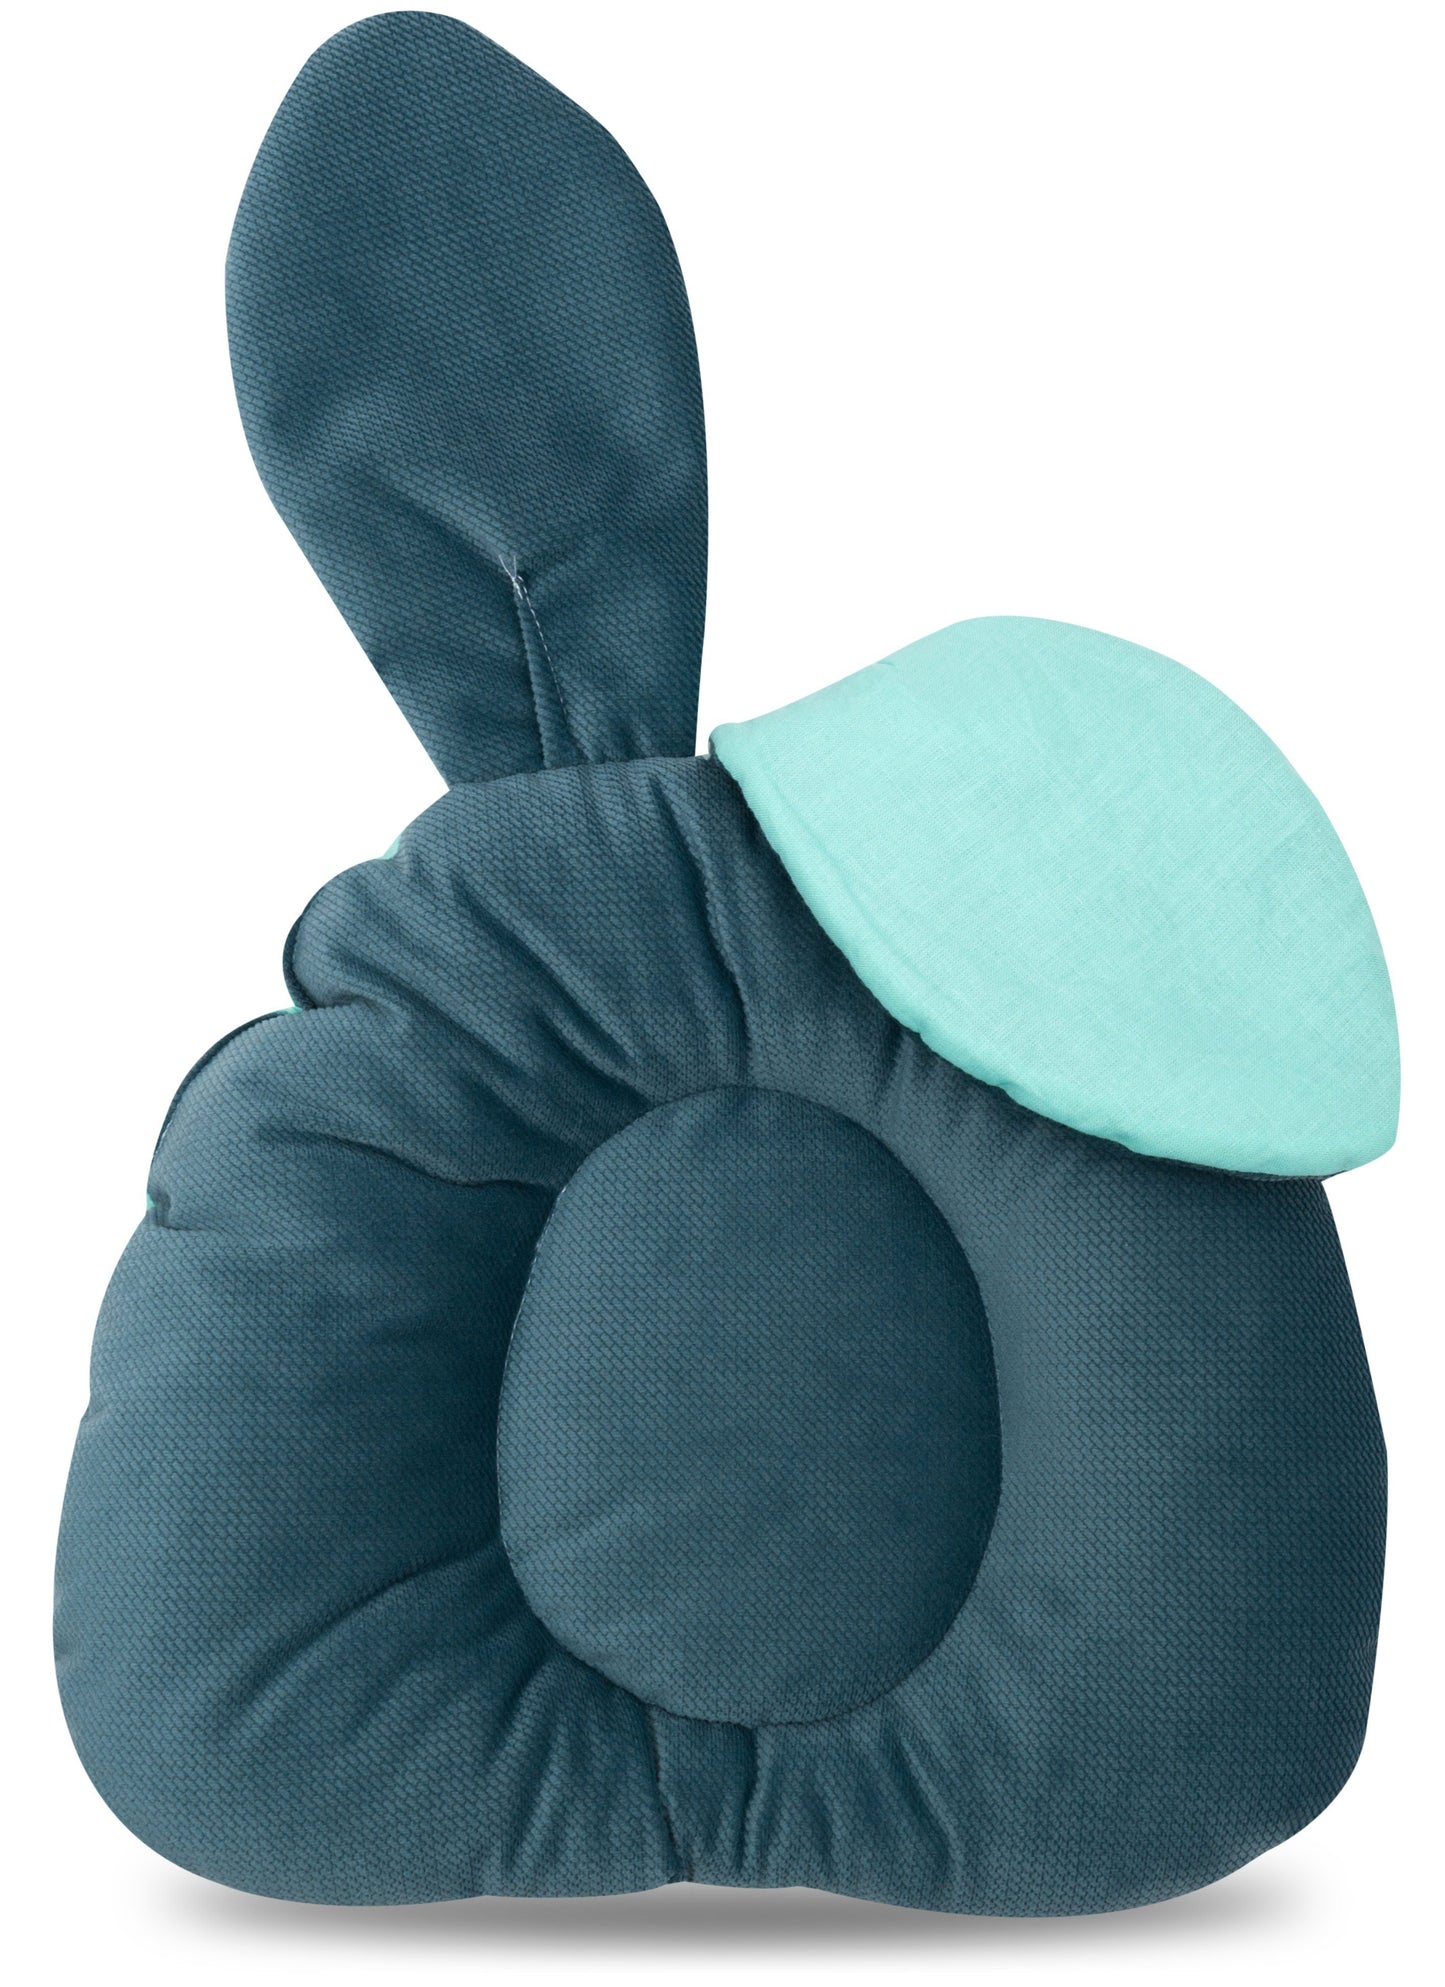 Bunny Pillow.